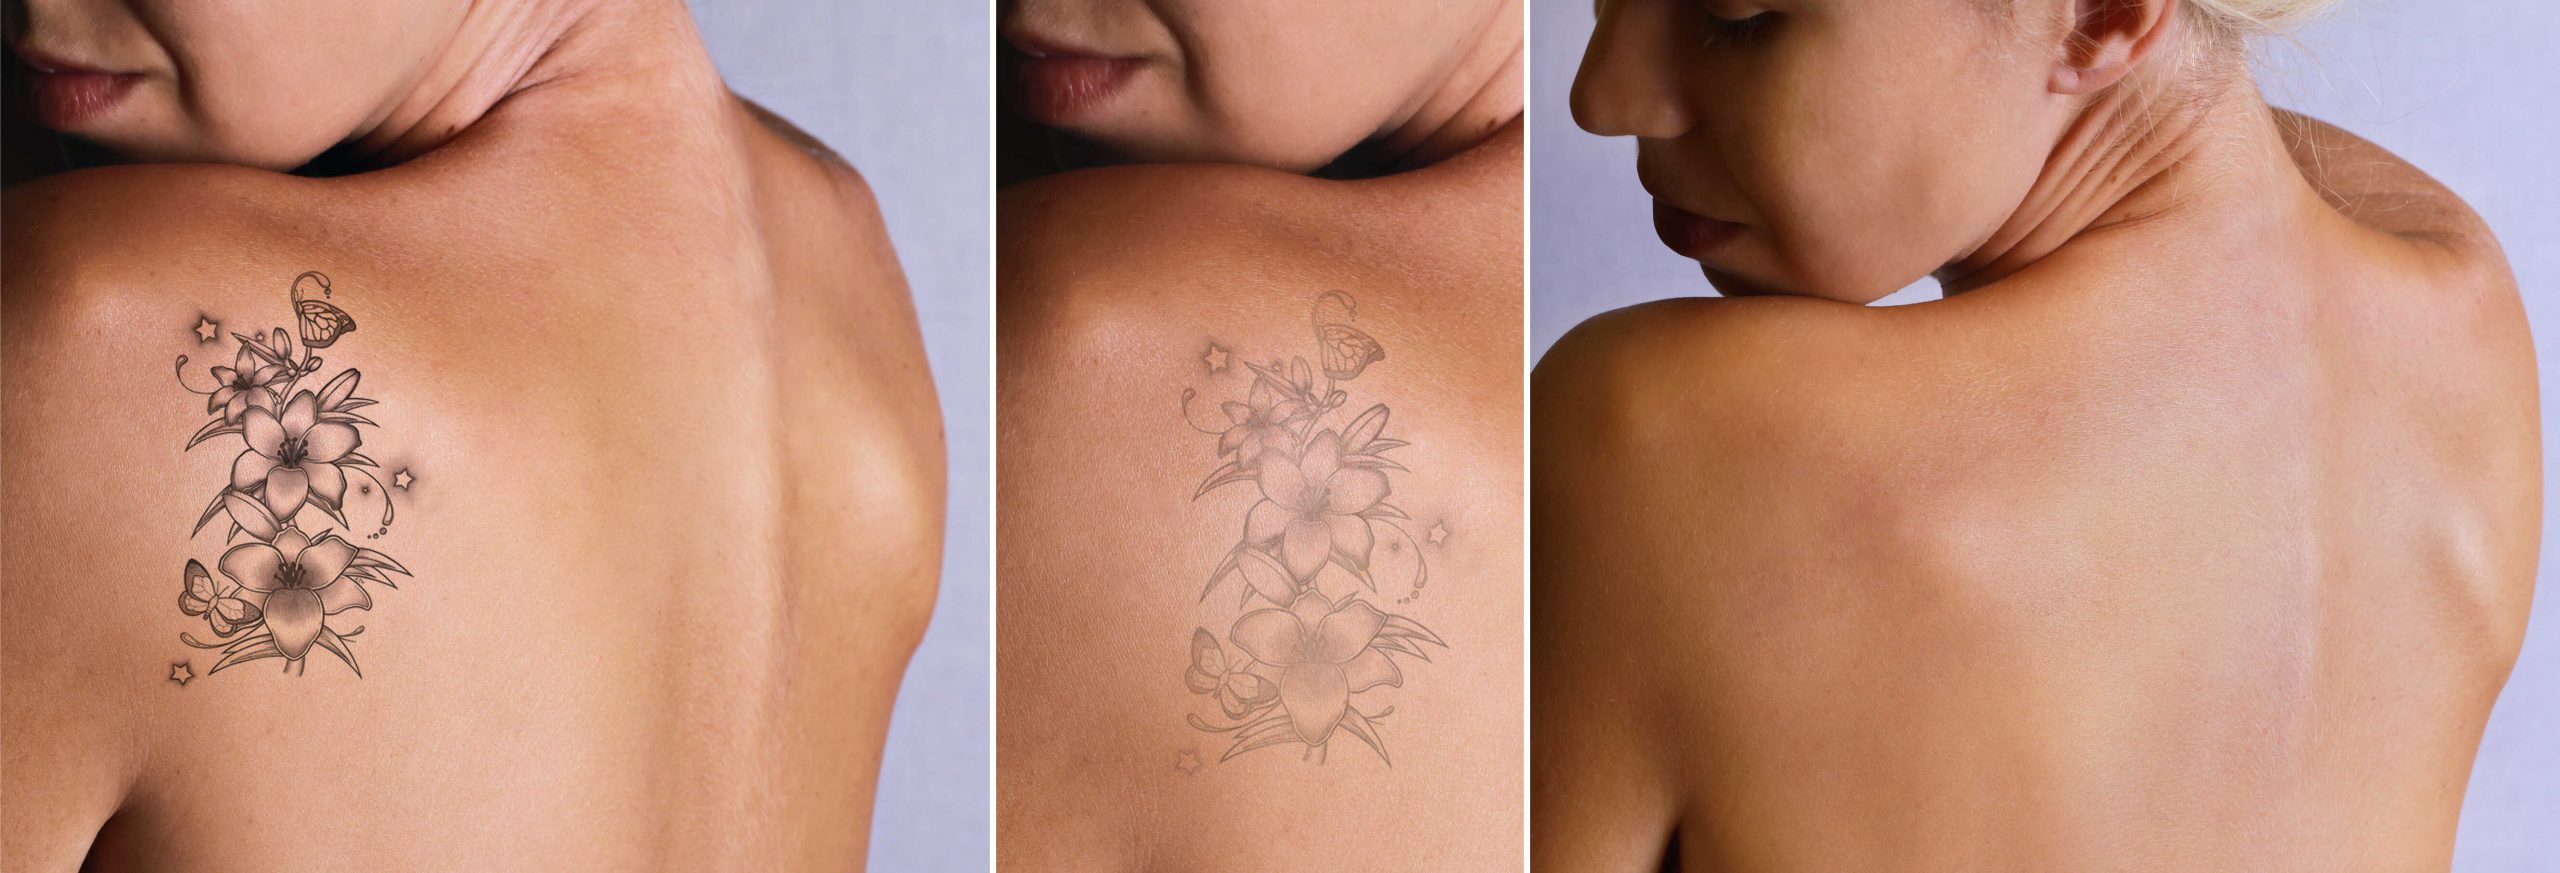 Skuteczne i bezpieczne usuwanie tatuaży i makijażu permanentnego (cz. 3) – metoda R20, ilość zabiegów i co po nich